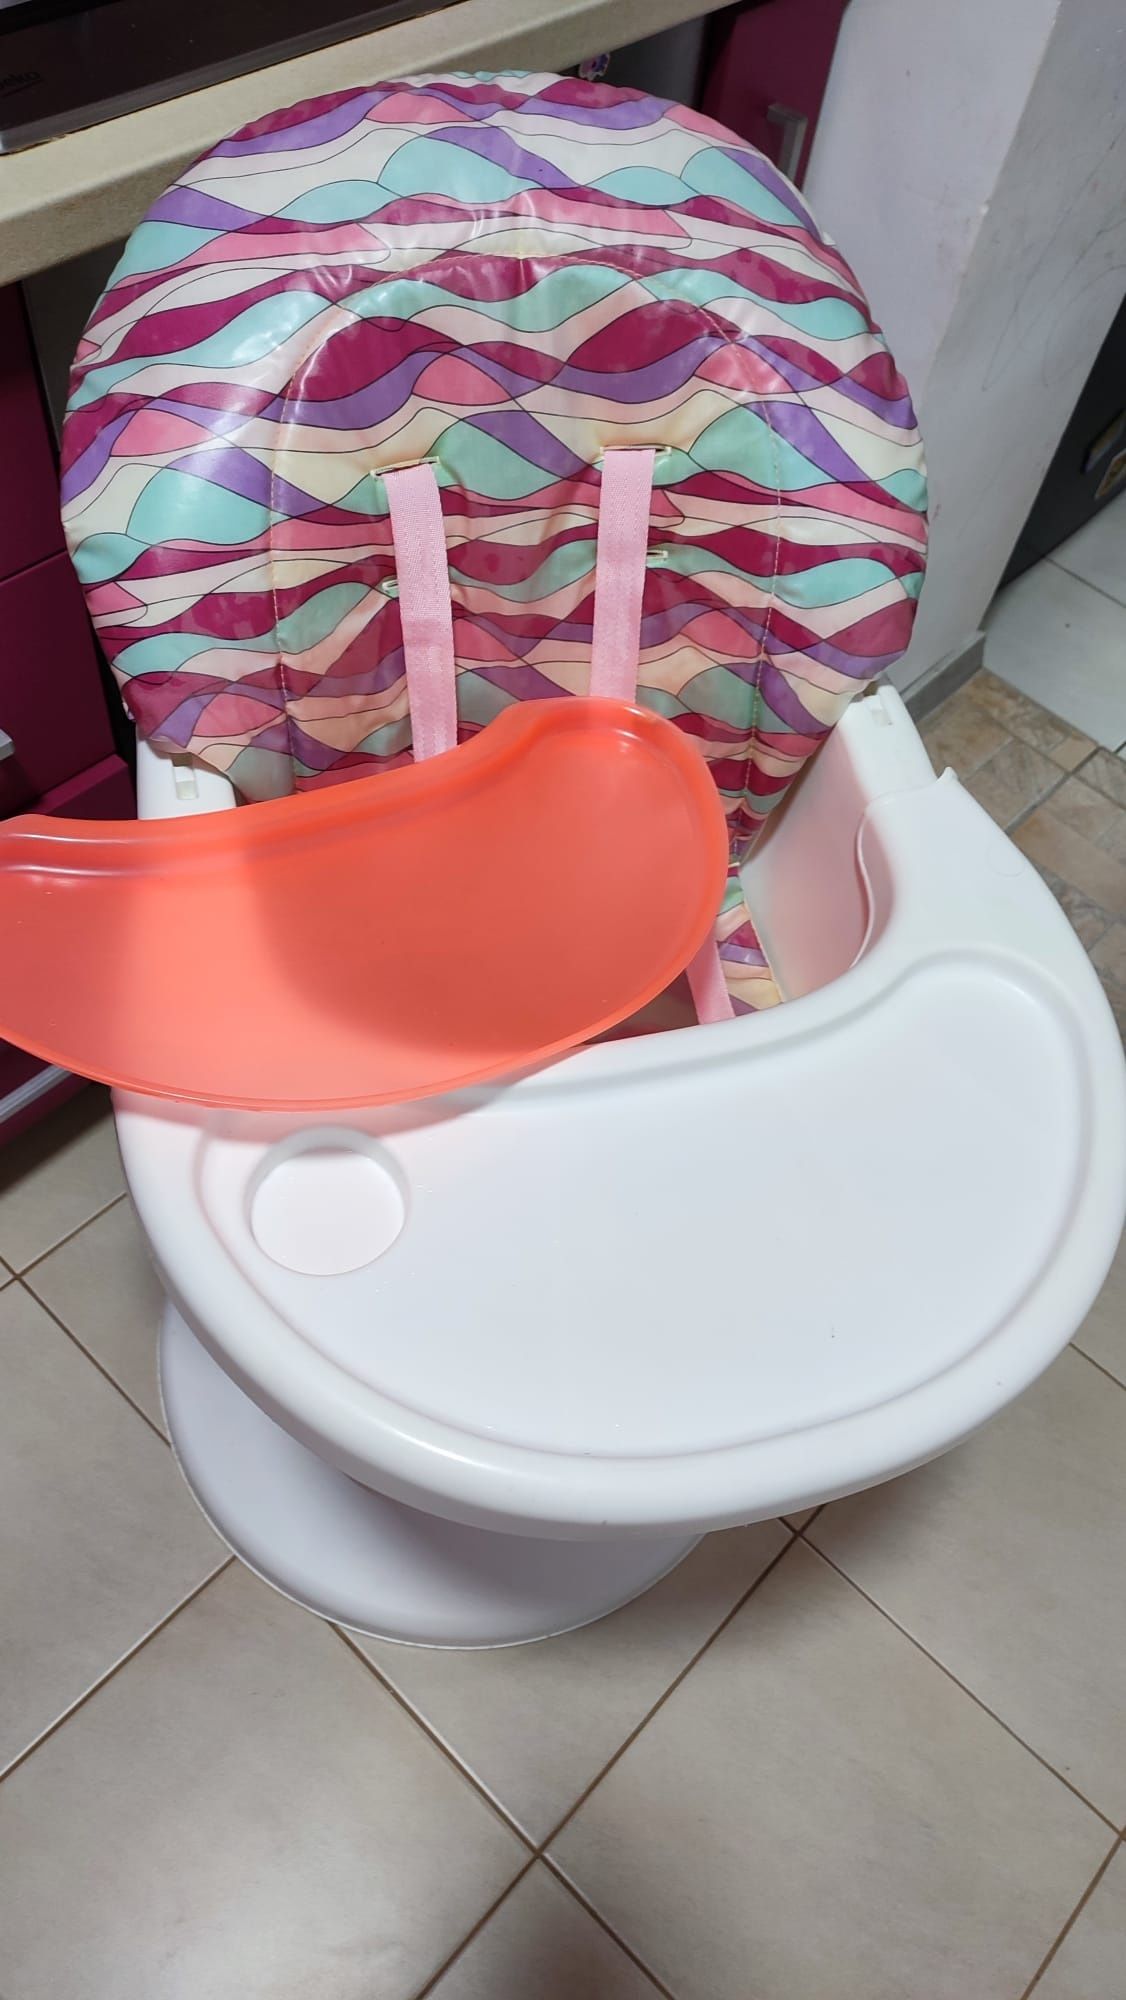 De vânzare scaun pentru bebeluși